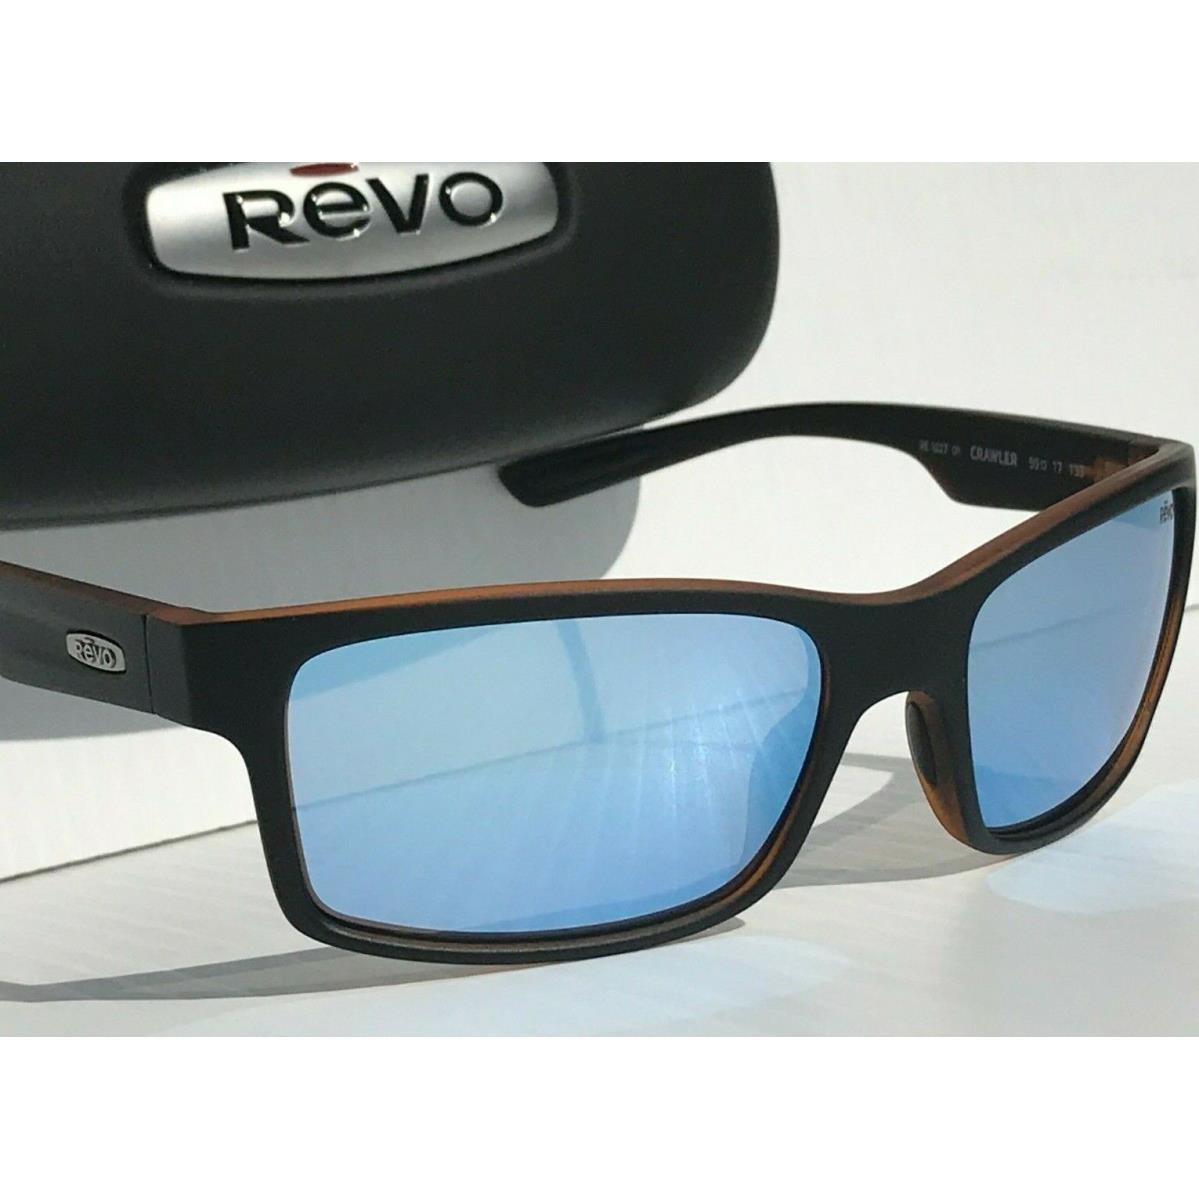 Revo sunglasses Crawler - Matte Black Tortoise Frame, Blue Water Mirrored Polarized Lens